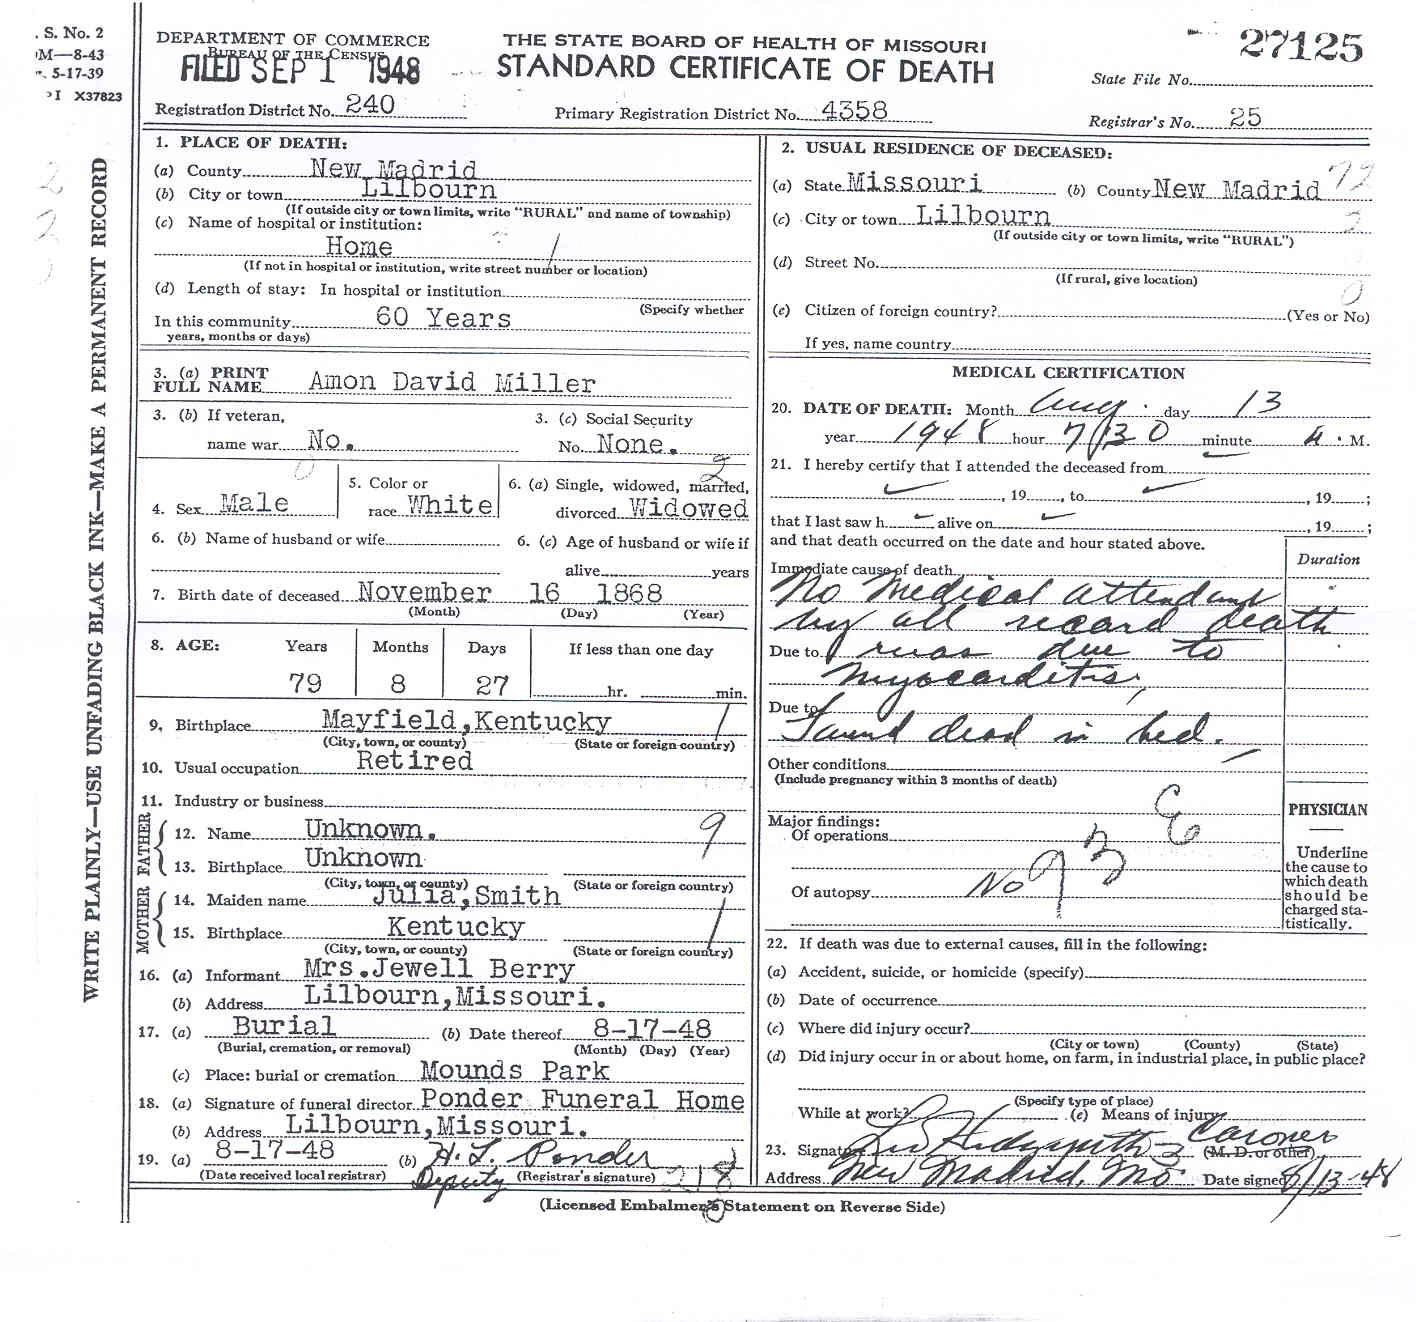 Amon David Miller Death Certificate